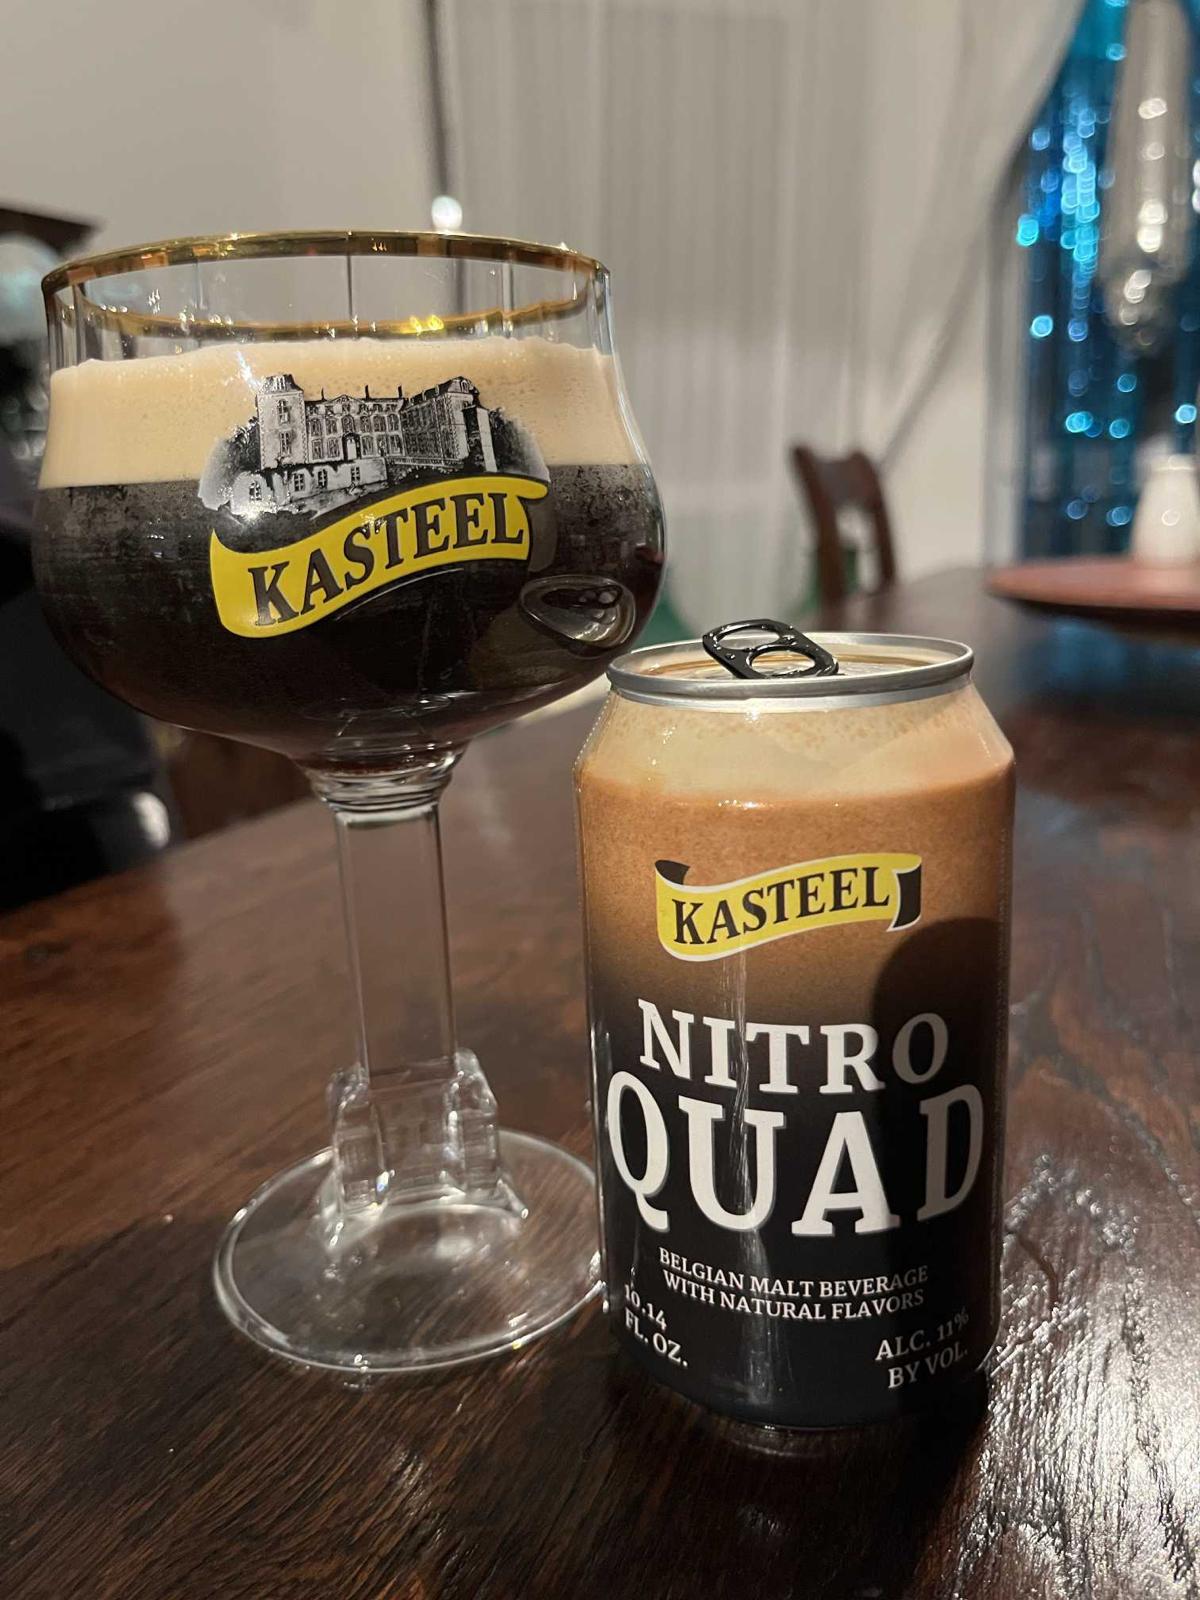 Kasteel Quad (Nitro)